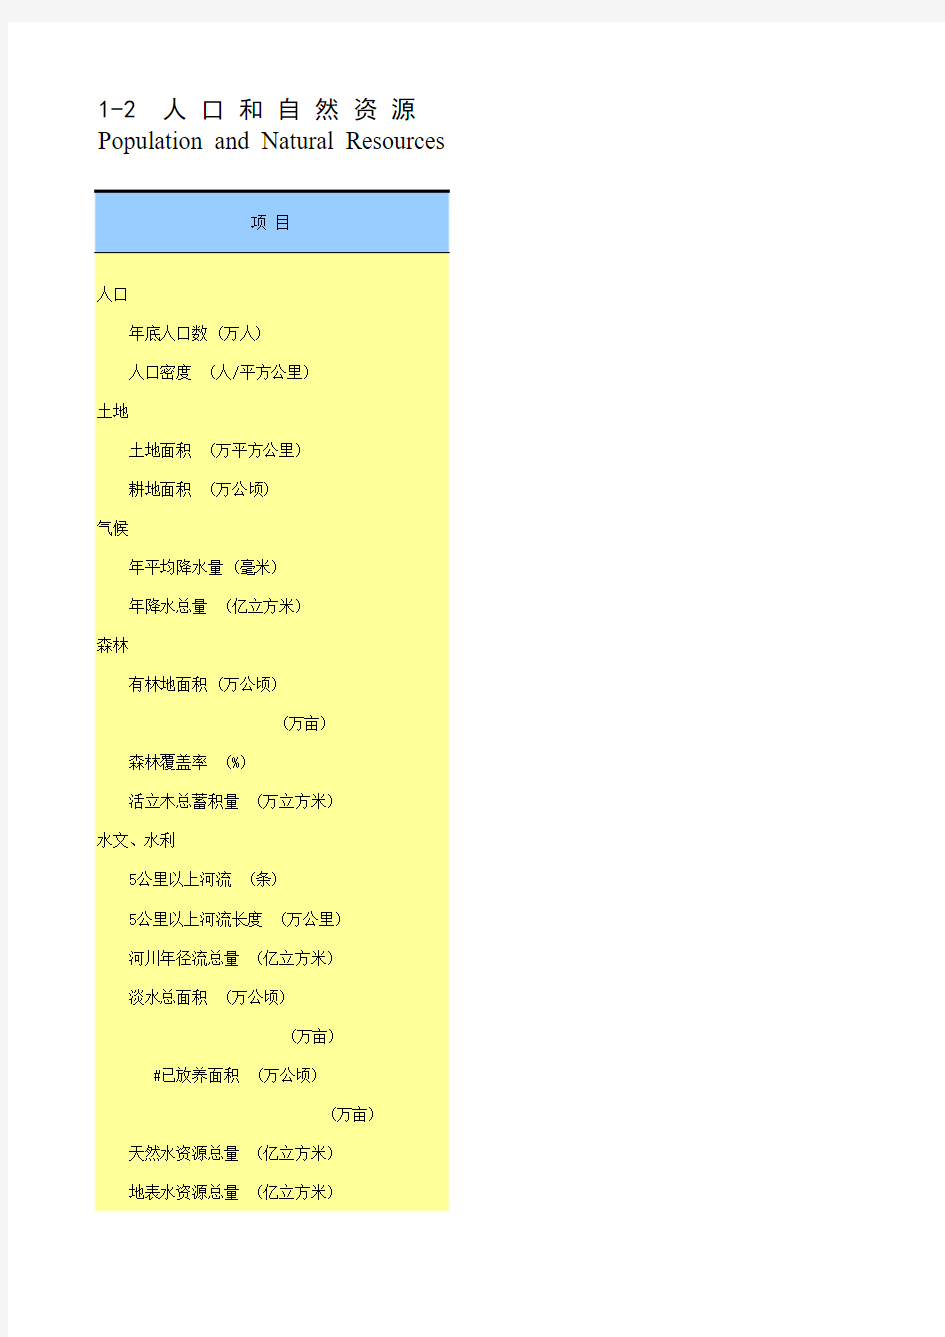 2014湖南统计年鉴